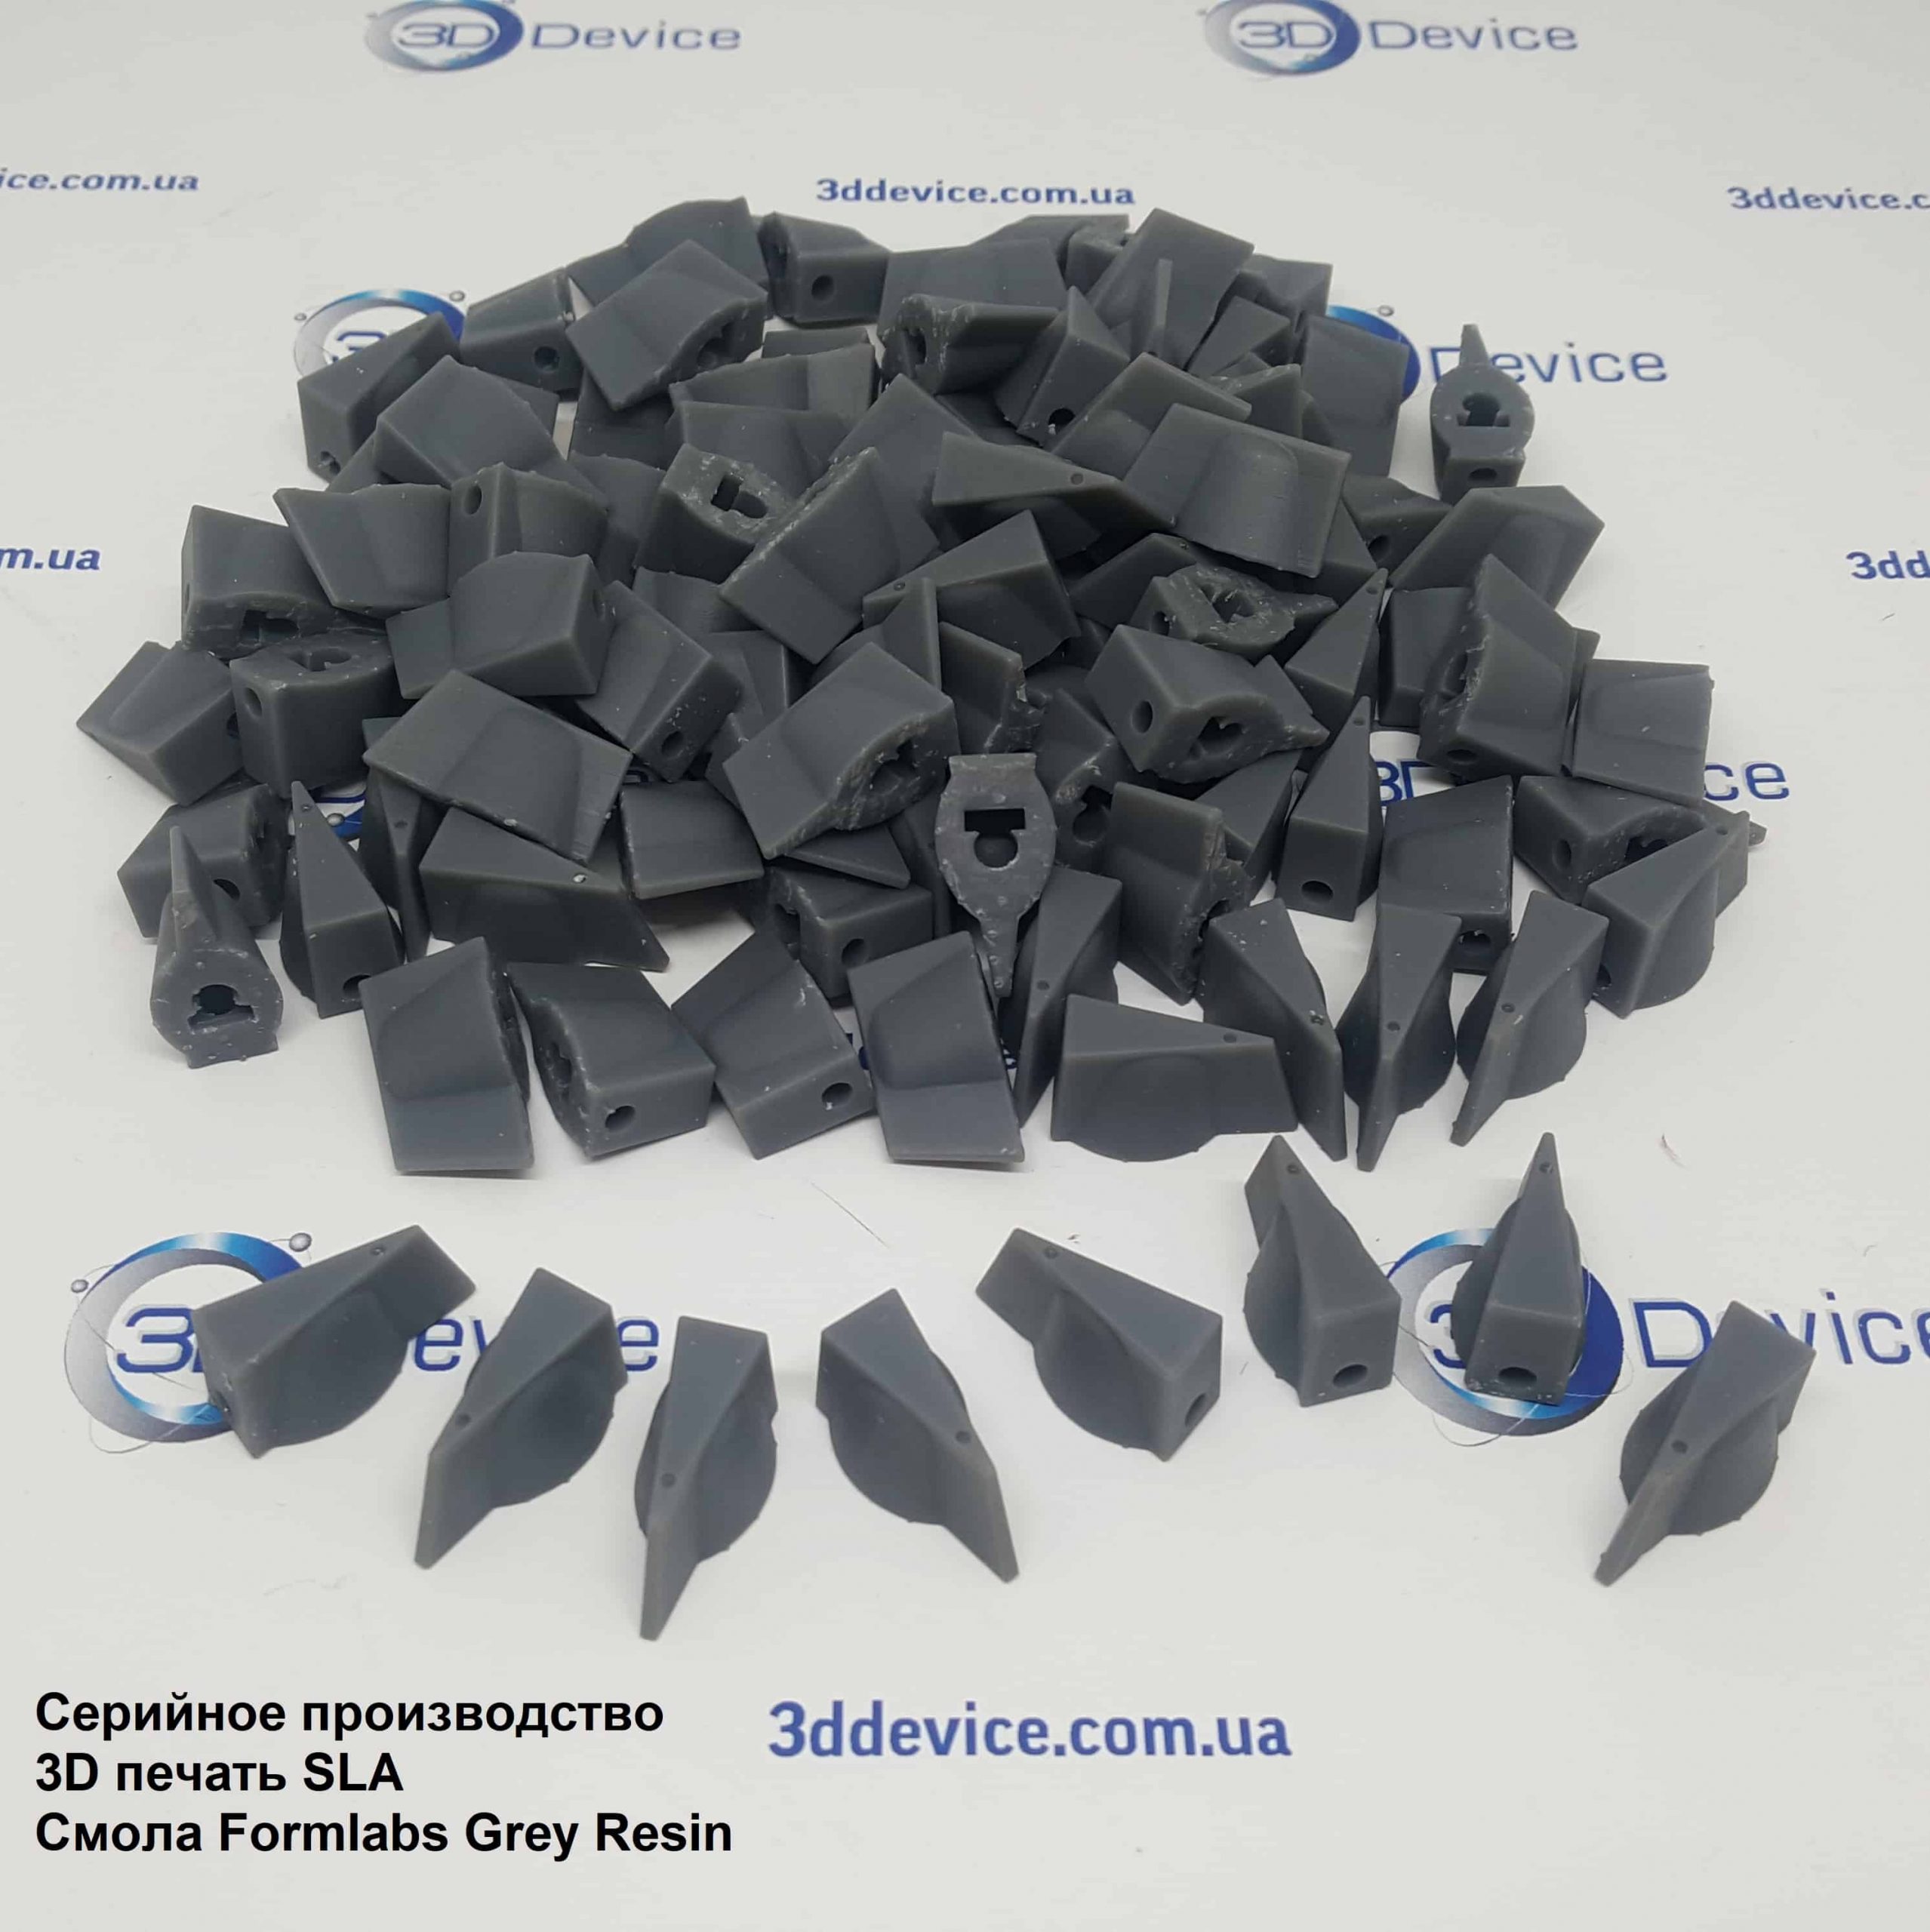 серийное производство 3D печать Formlabs Grey Resin